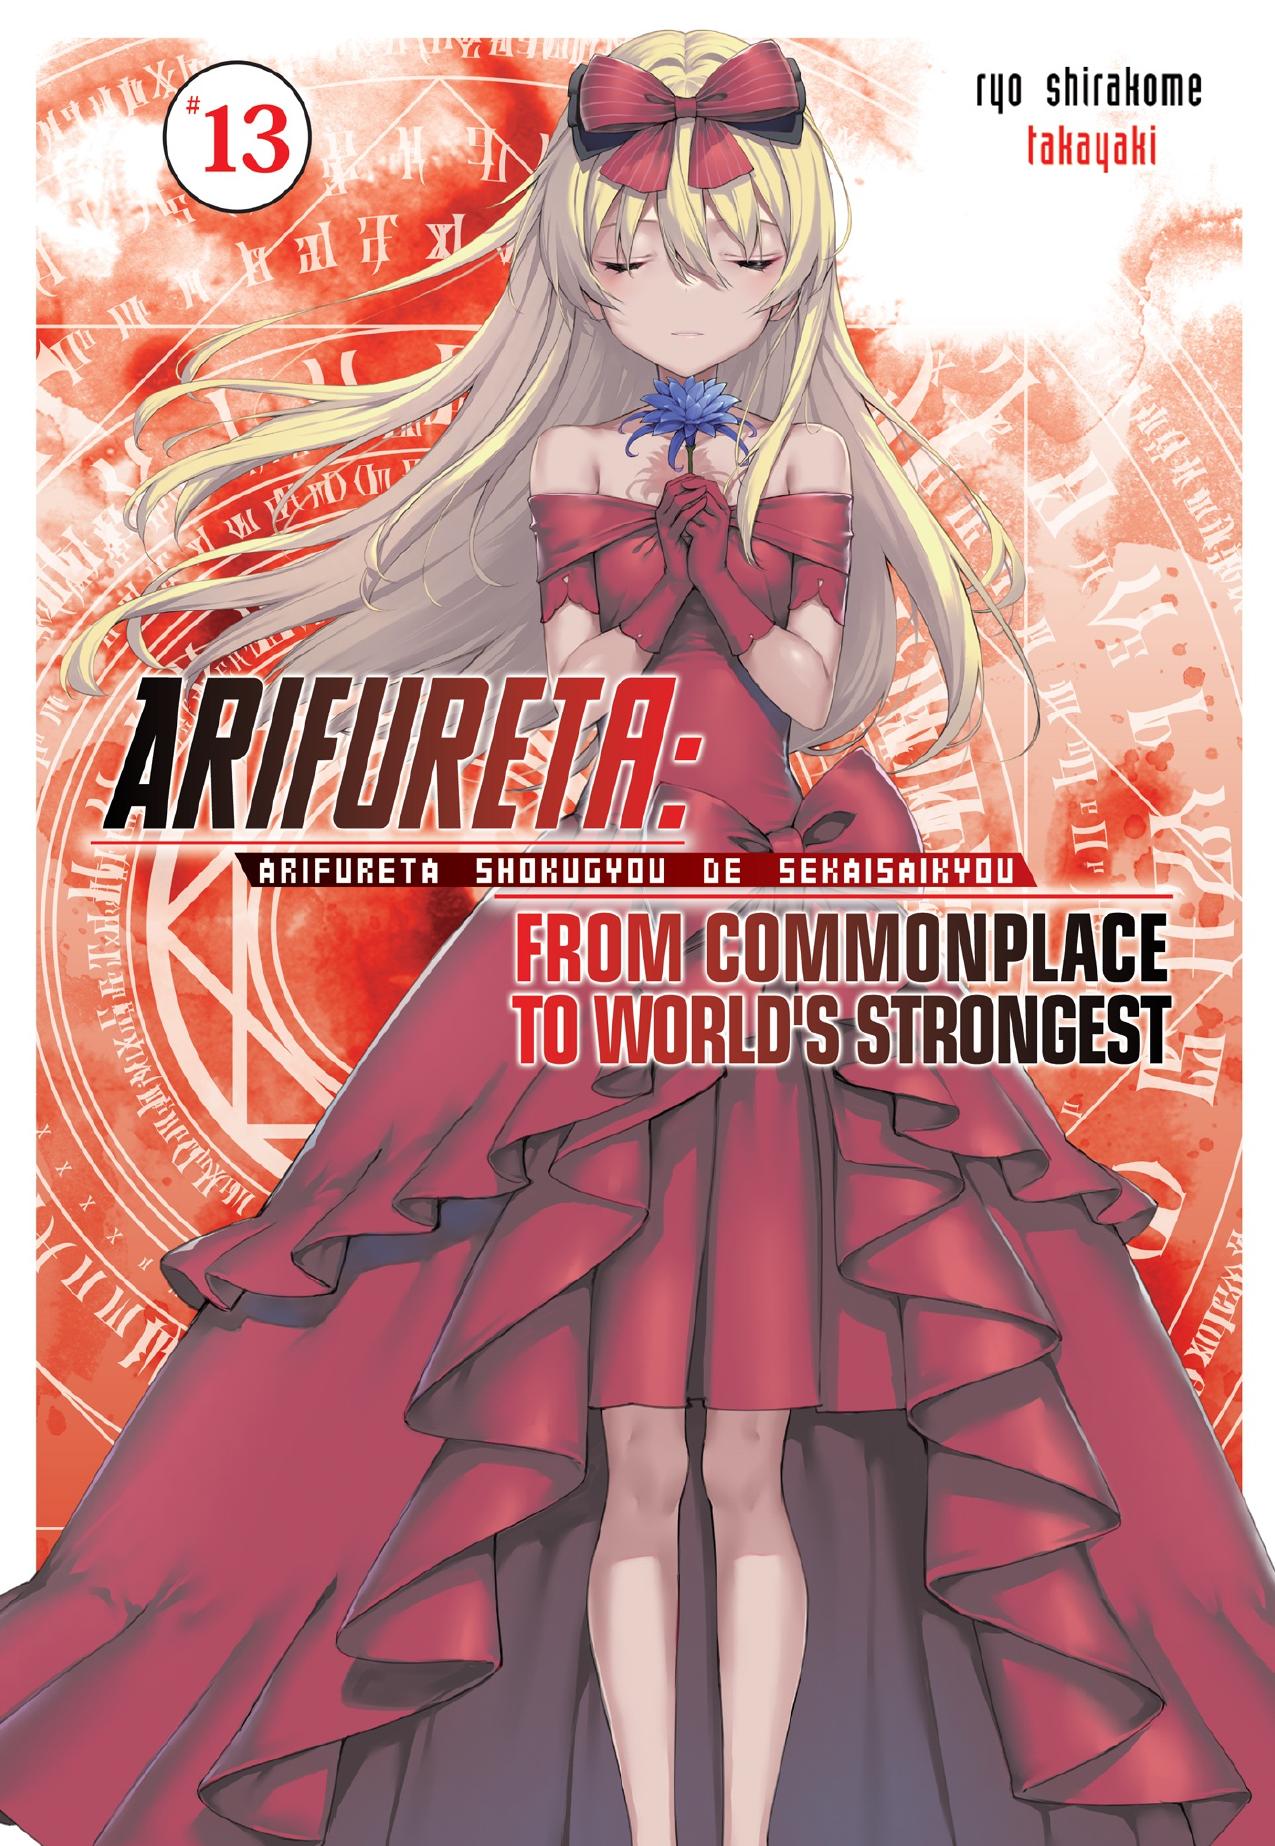 Arifureta: From Commonplace to Worldâs Strongest Vol. 13 by Ryo Shirakome